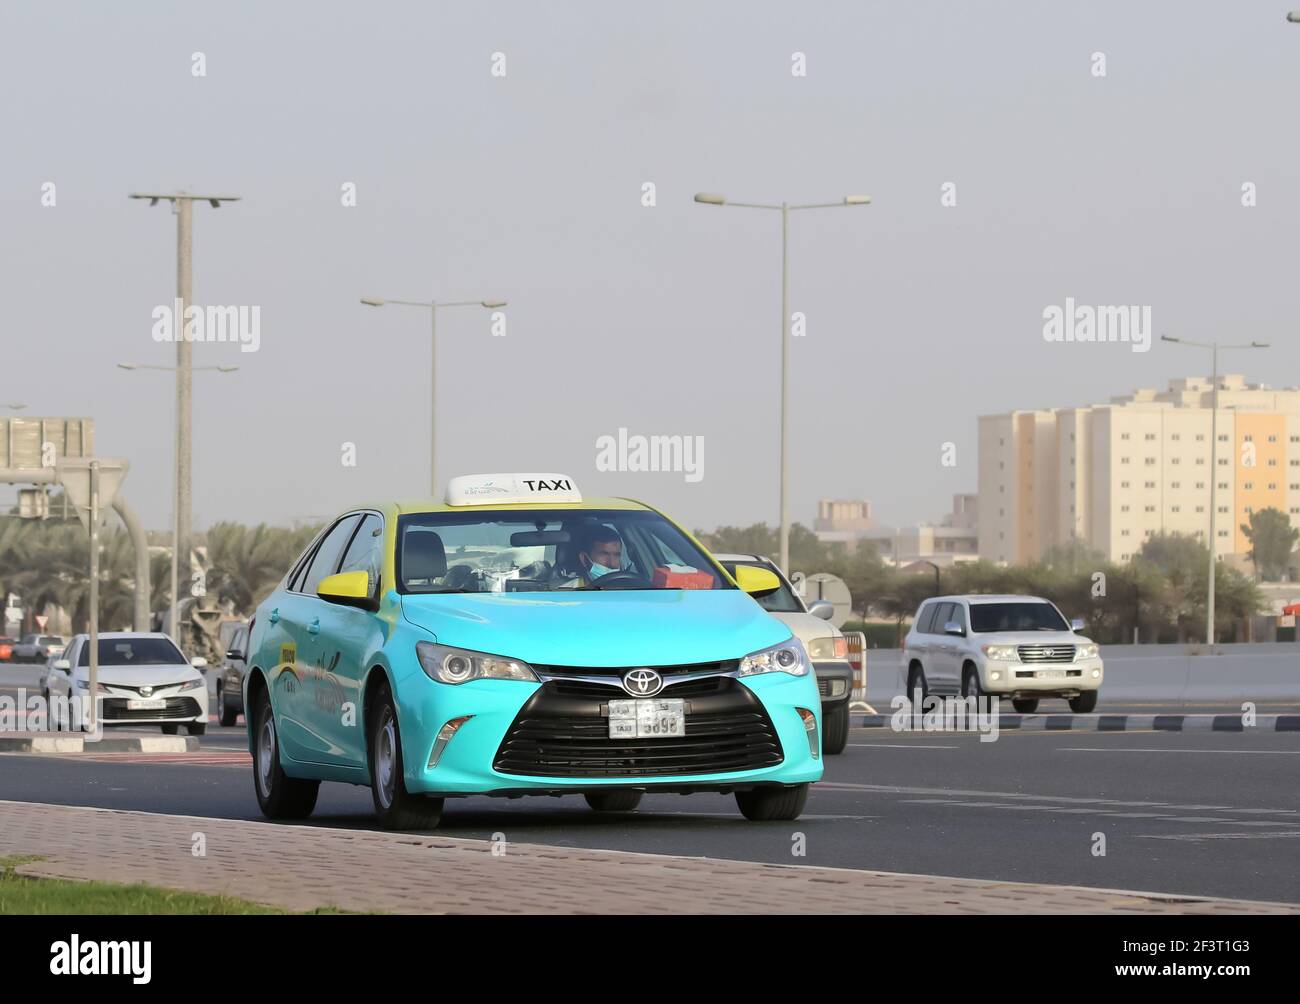 Una vista de un taxi público en Doha, Qatar Foto de stock